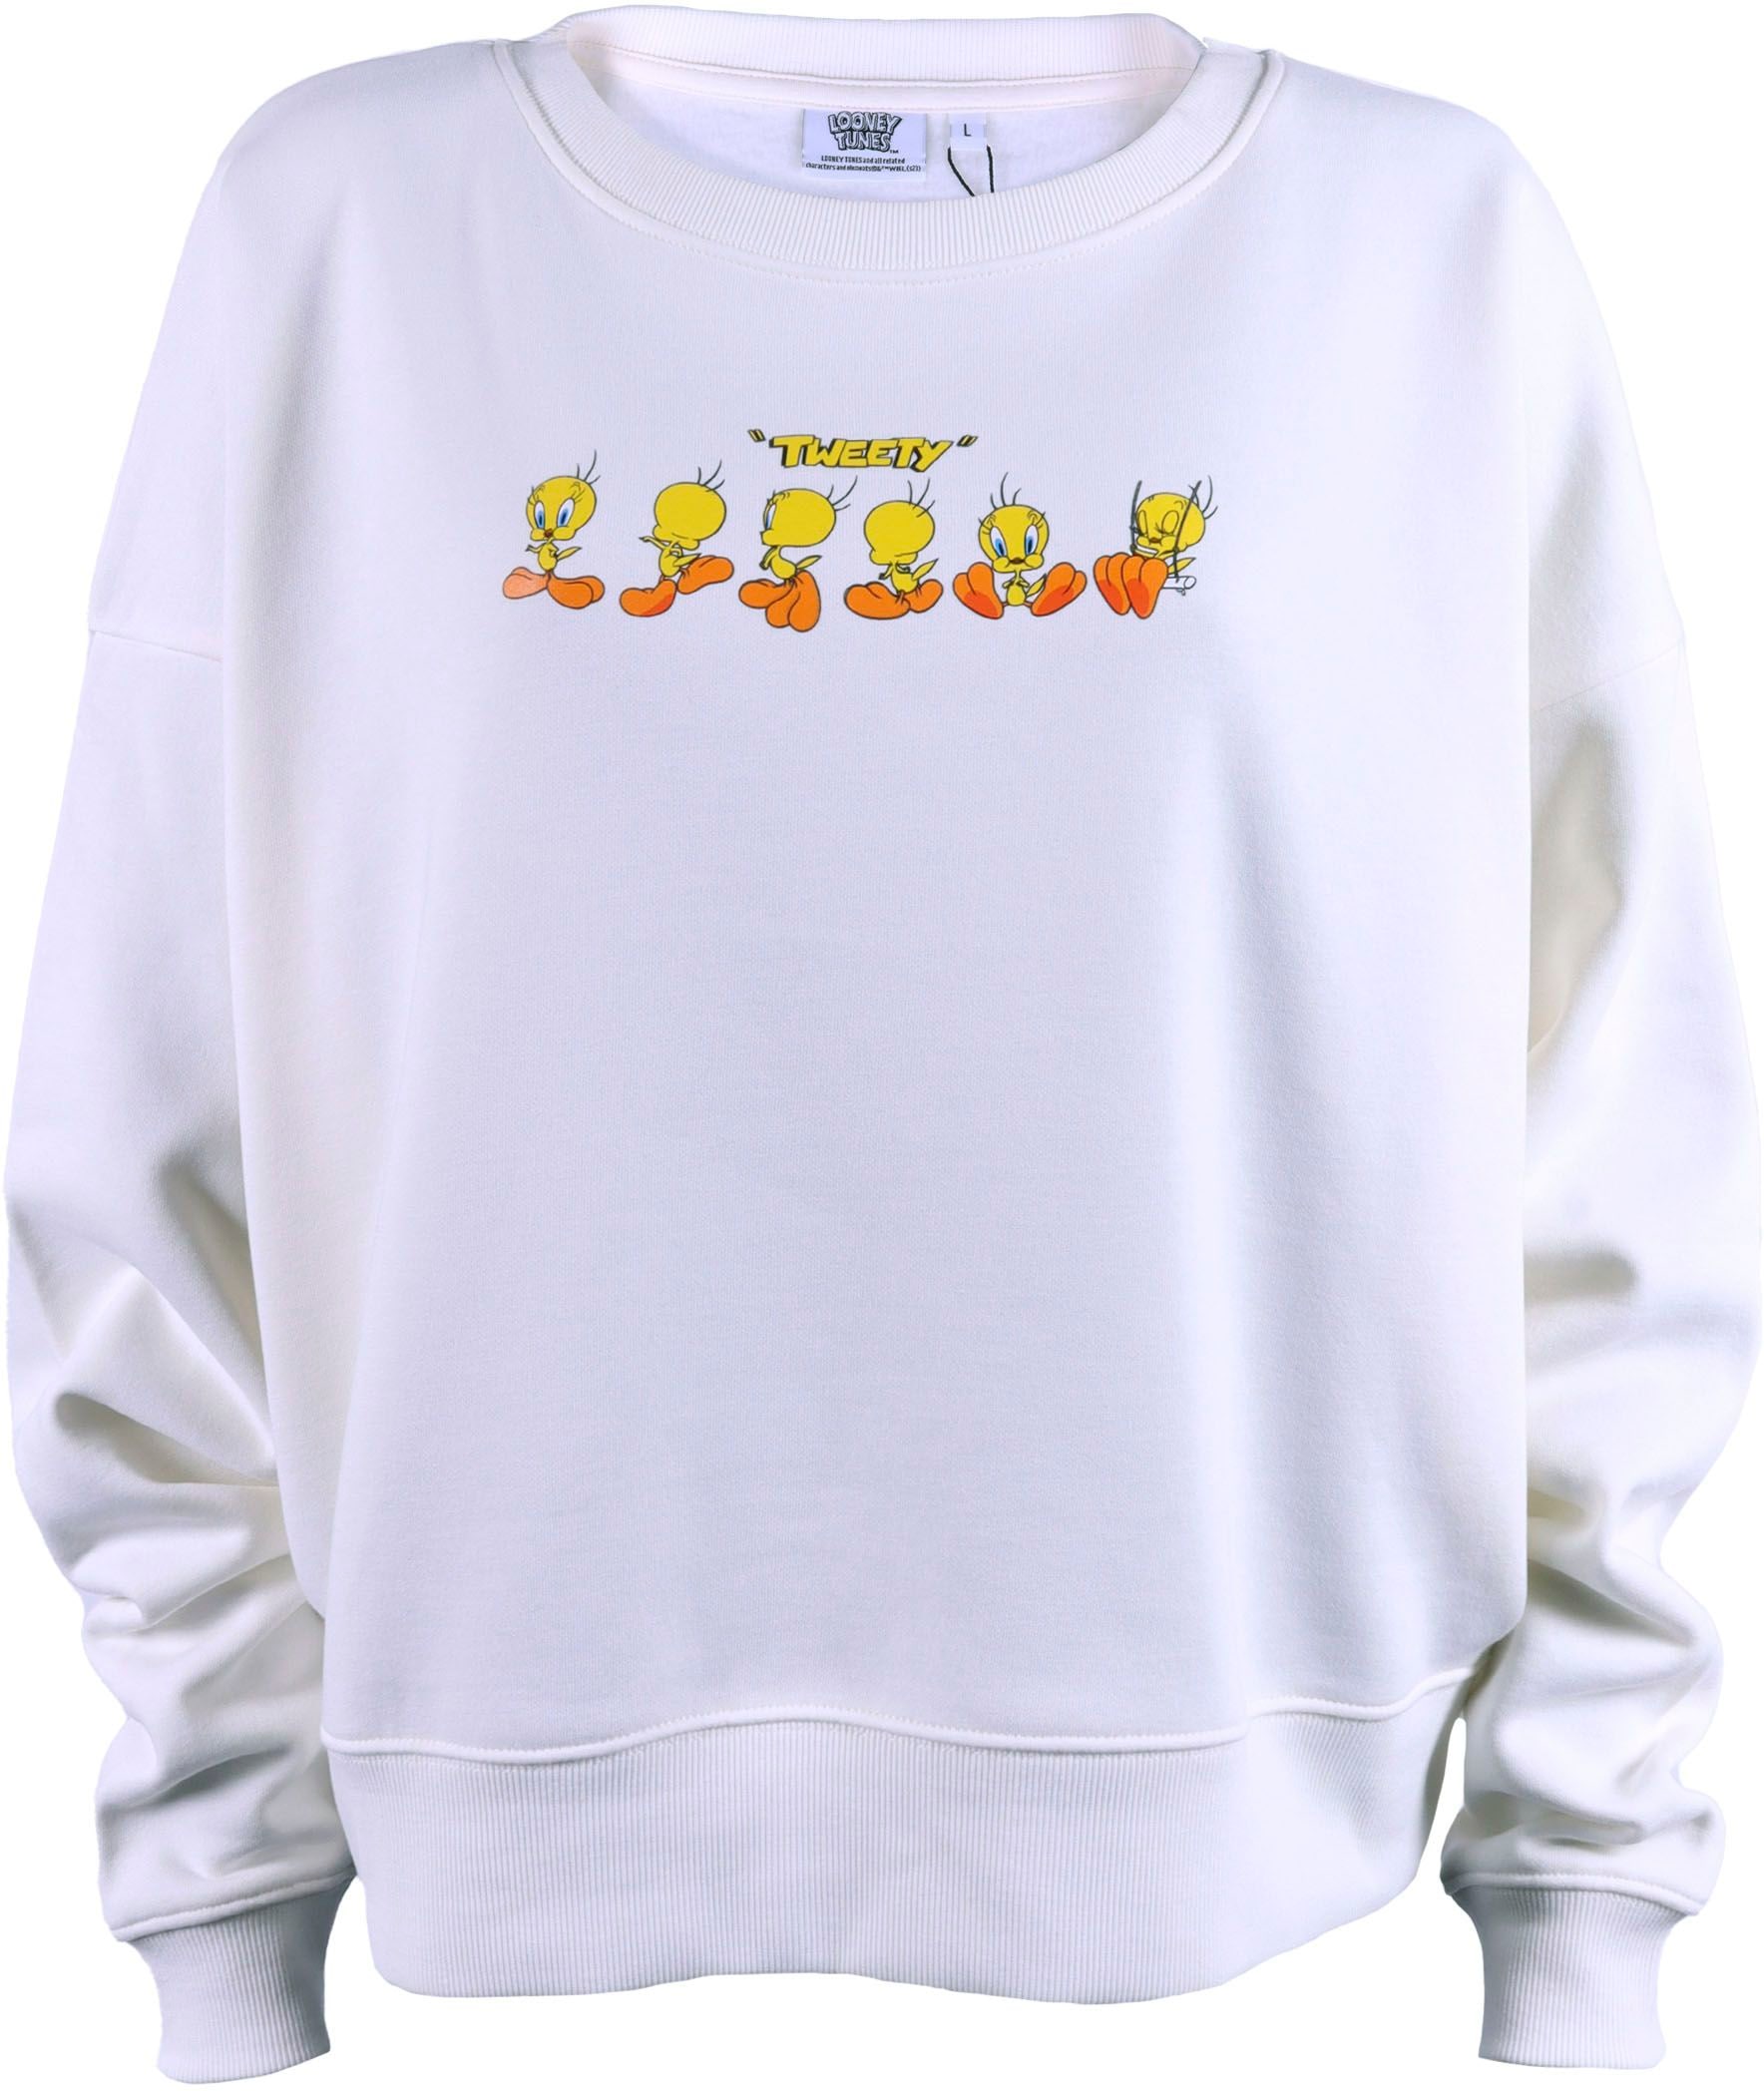 Capelli New York Sweatshirt, Tweety Character Lizenz Design auf Vorder- & Rückseite.